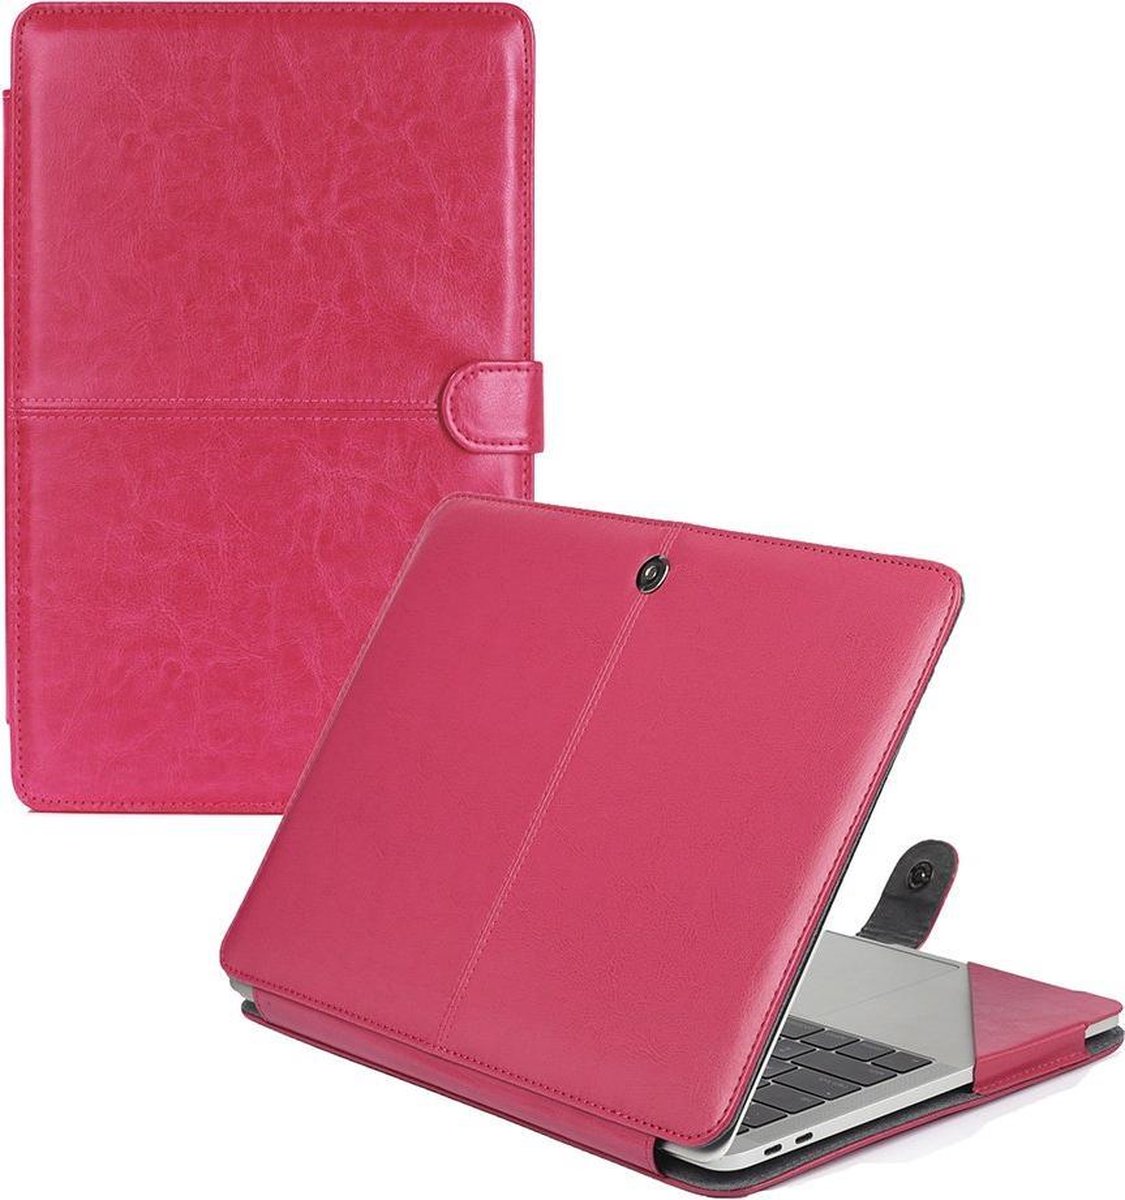 Leolee 13 Pouces Housse Ordinateur Portable Cuir PU PC Sacoche Compatible MacBook Air 2016/2017/2018 et MacBook Pro A1706/A1989/A1708 avec Petit Etui 